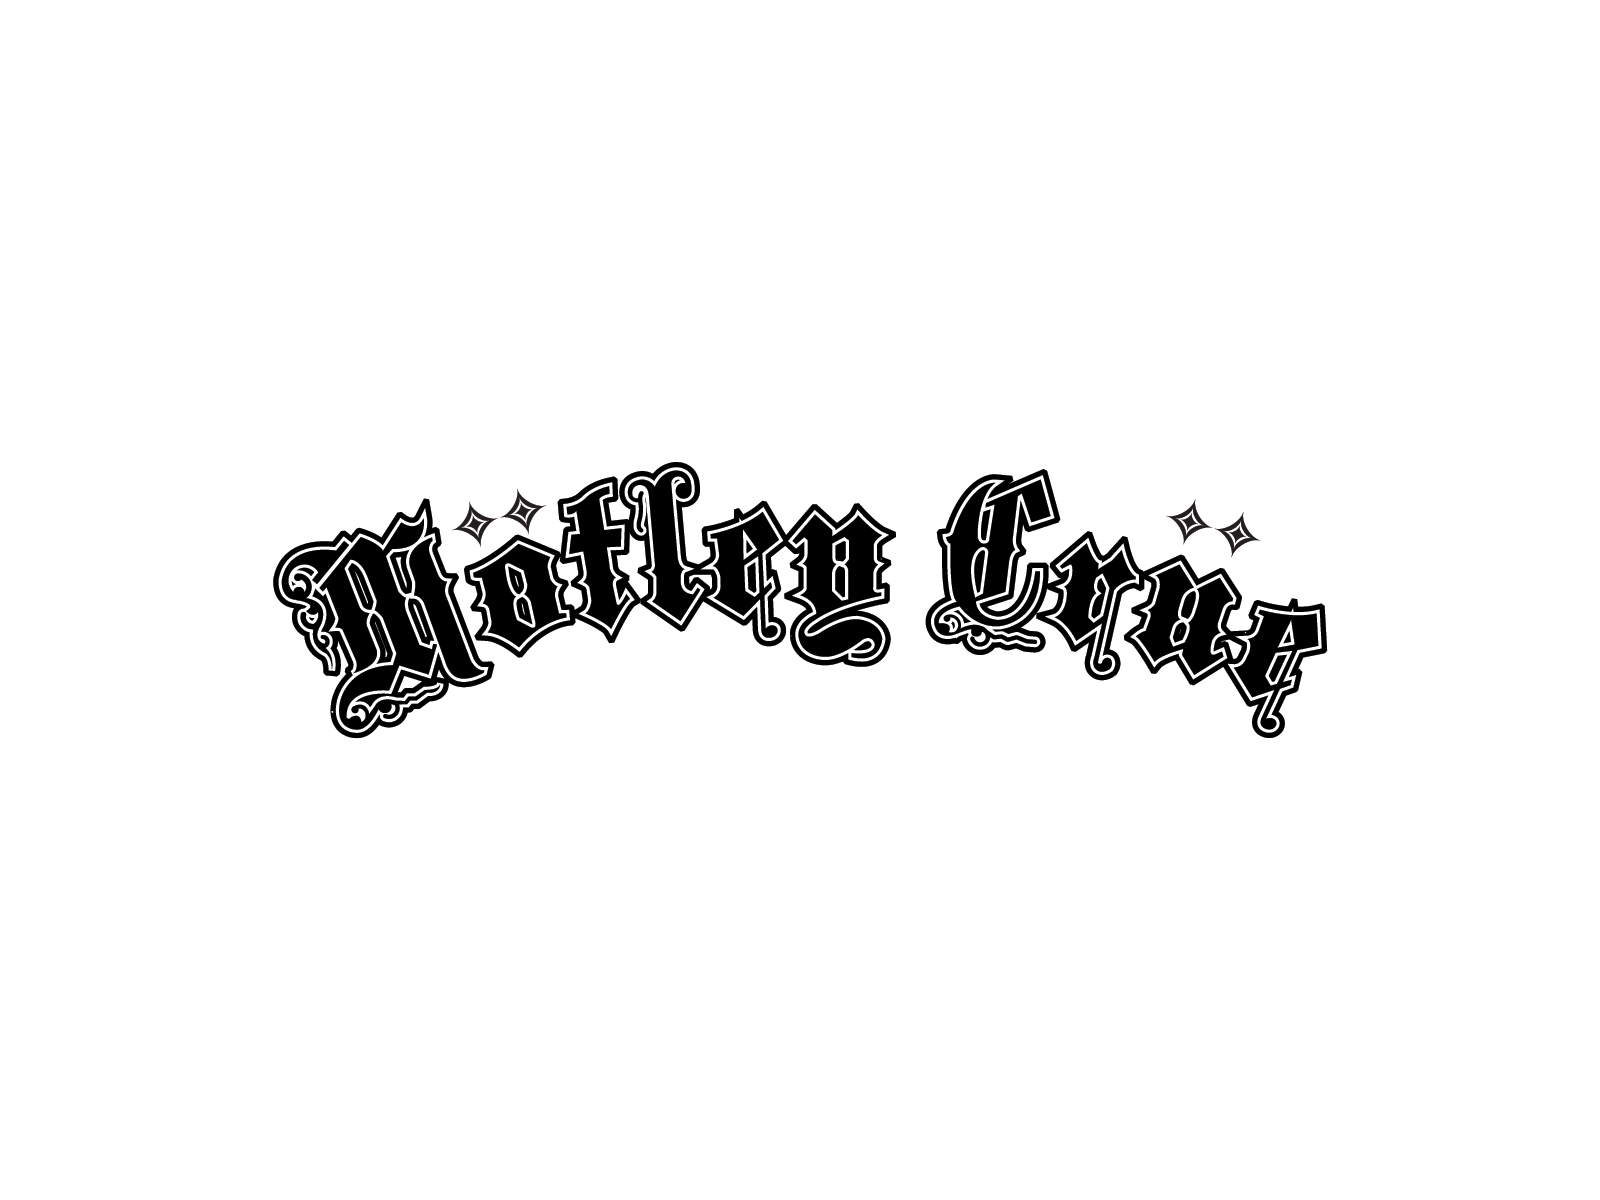 Motley Crue Logo And Wallpapers Band Logos Rock Band Logos